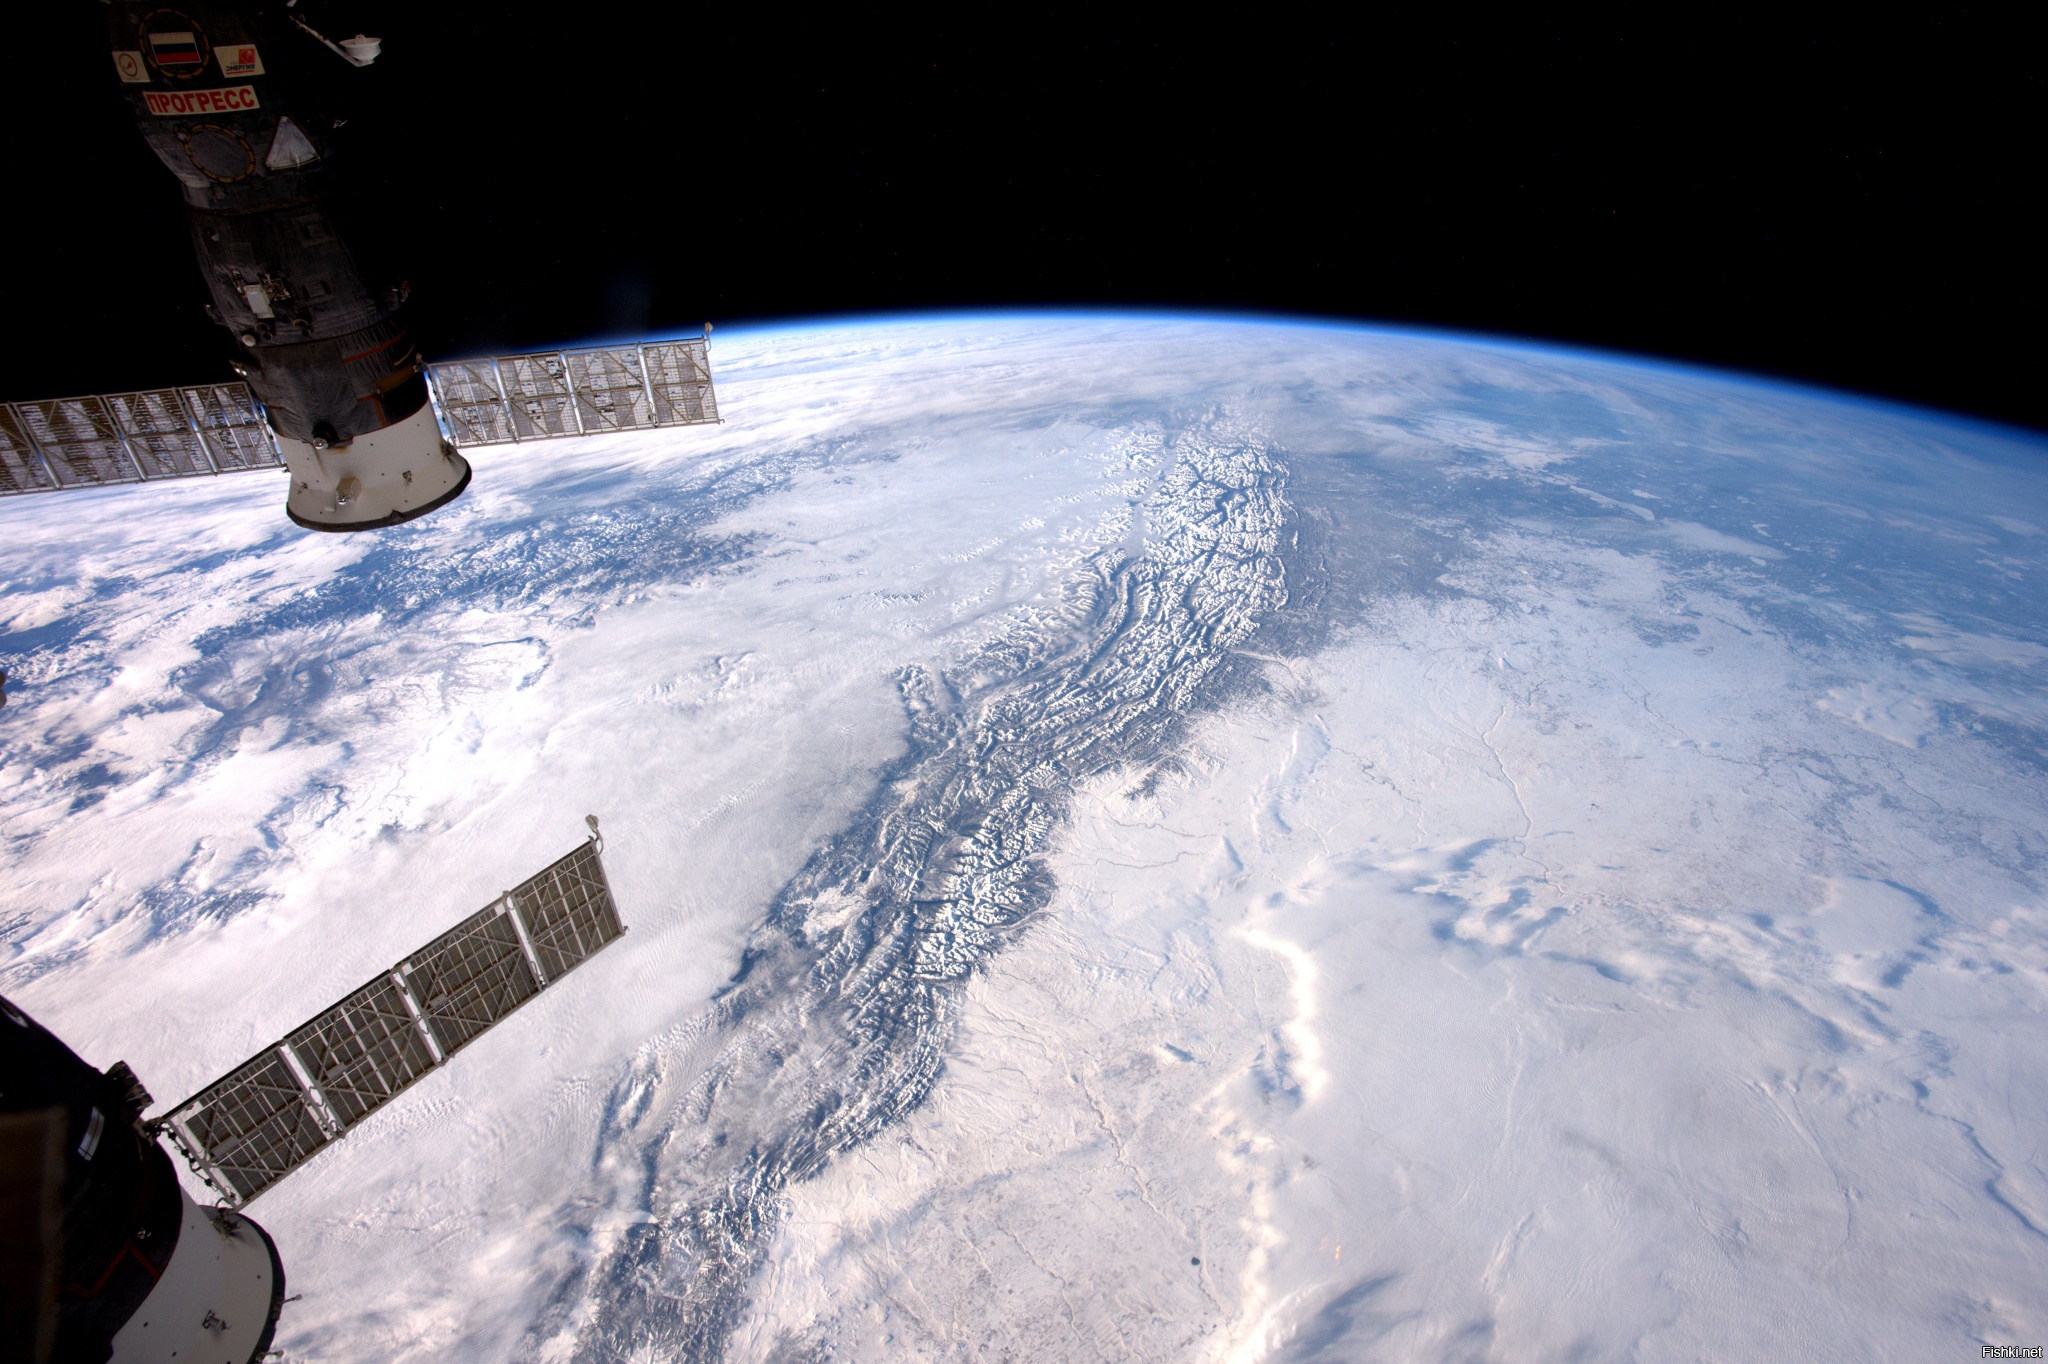 Снимки со спутников космос